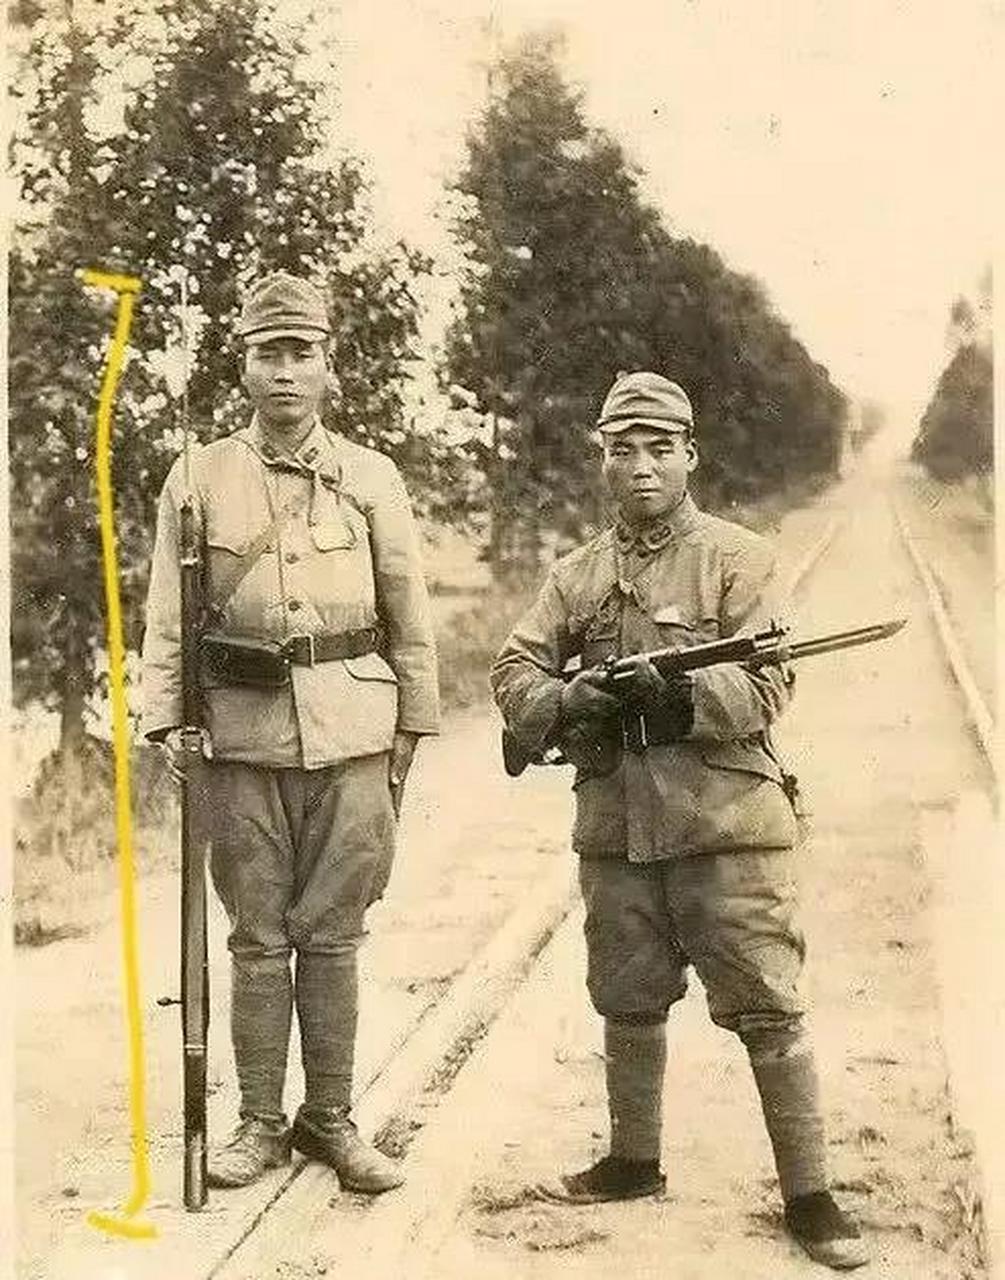 百家号星火计划 抗日战争时期,日军身高好像真的不高 图1是在战争